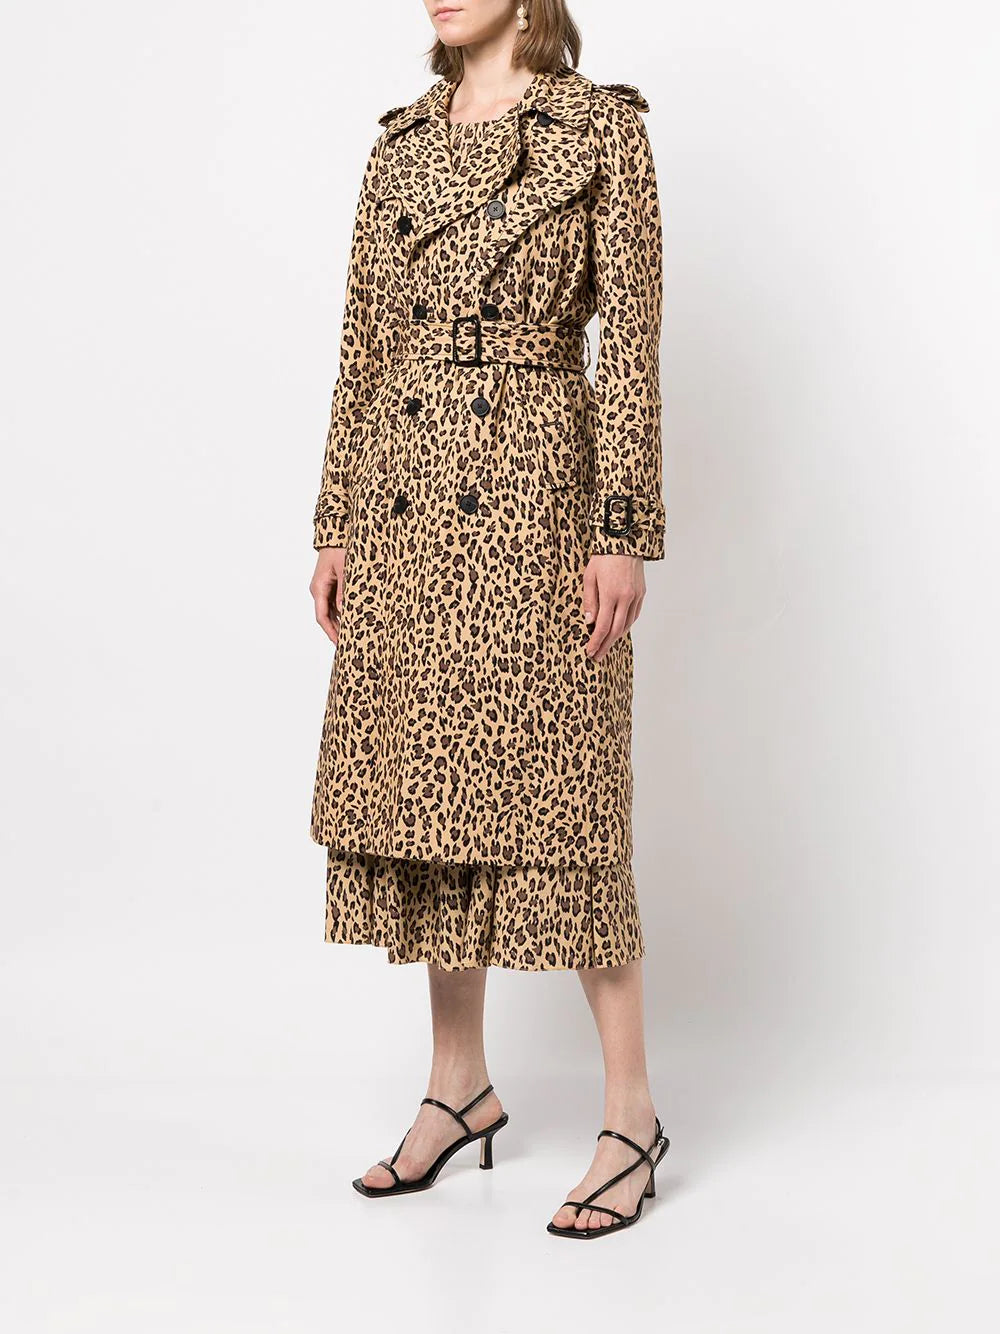 Trench Coat - Cheetah Print